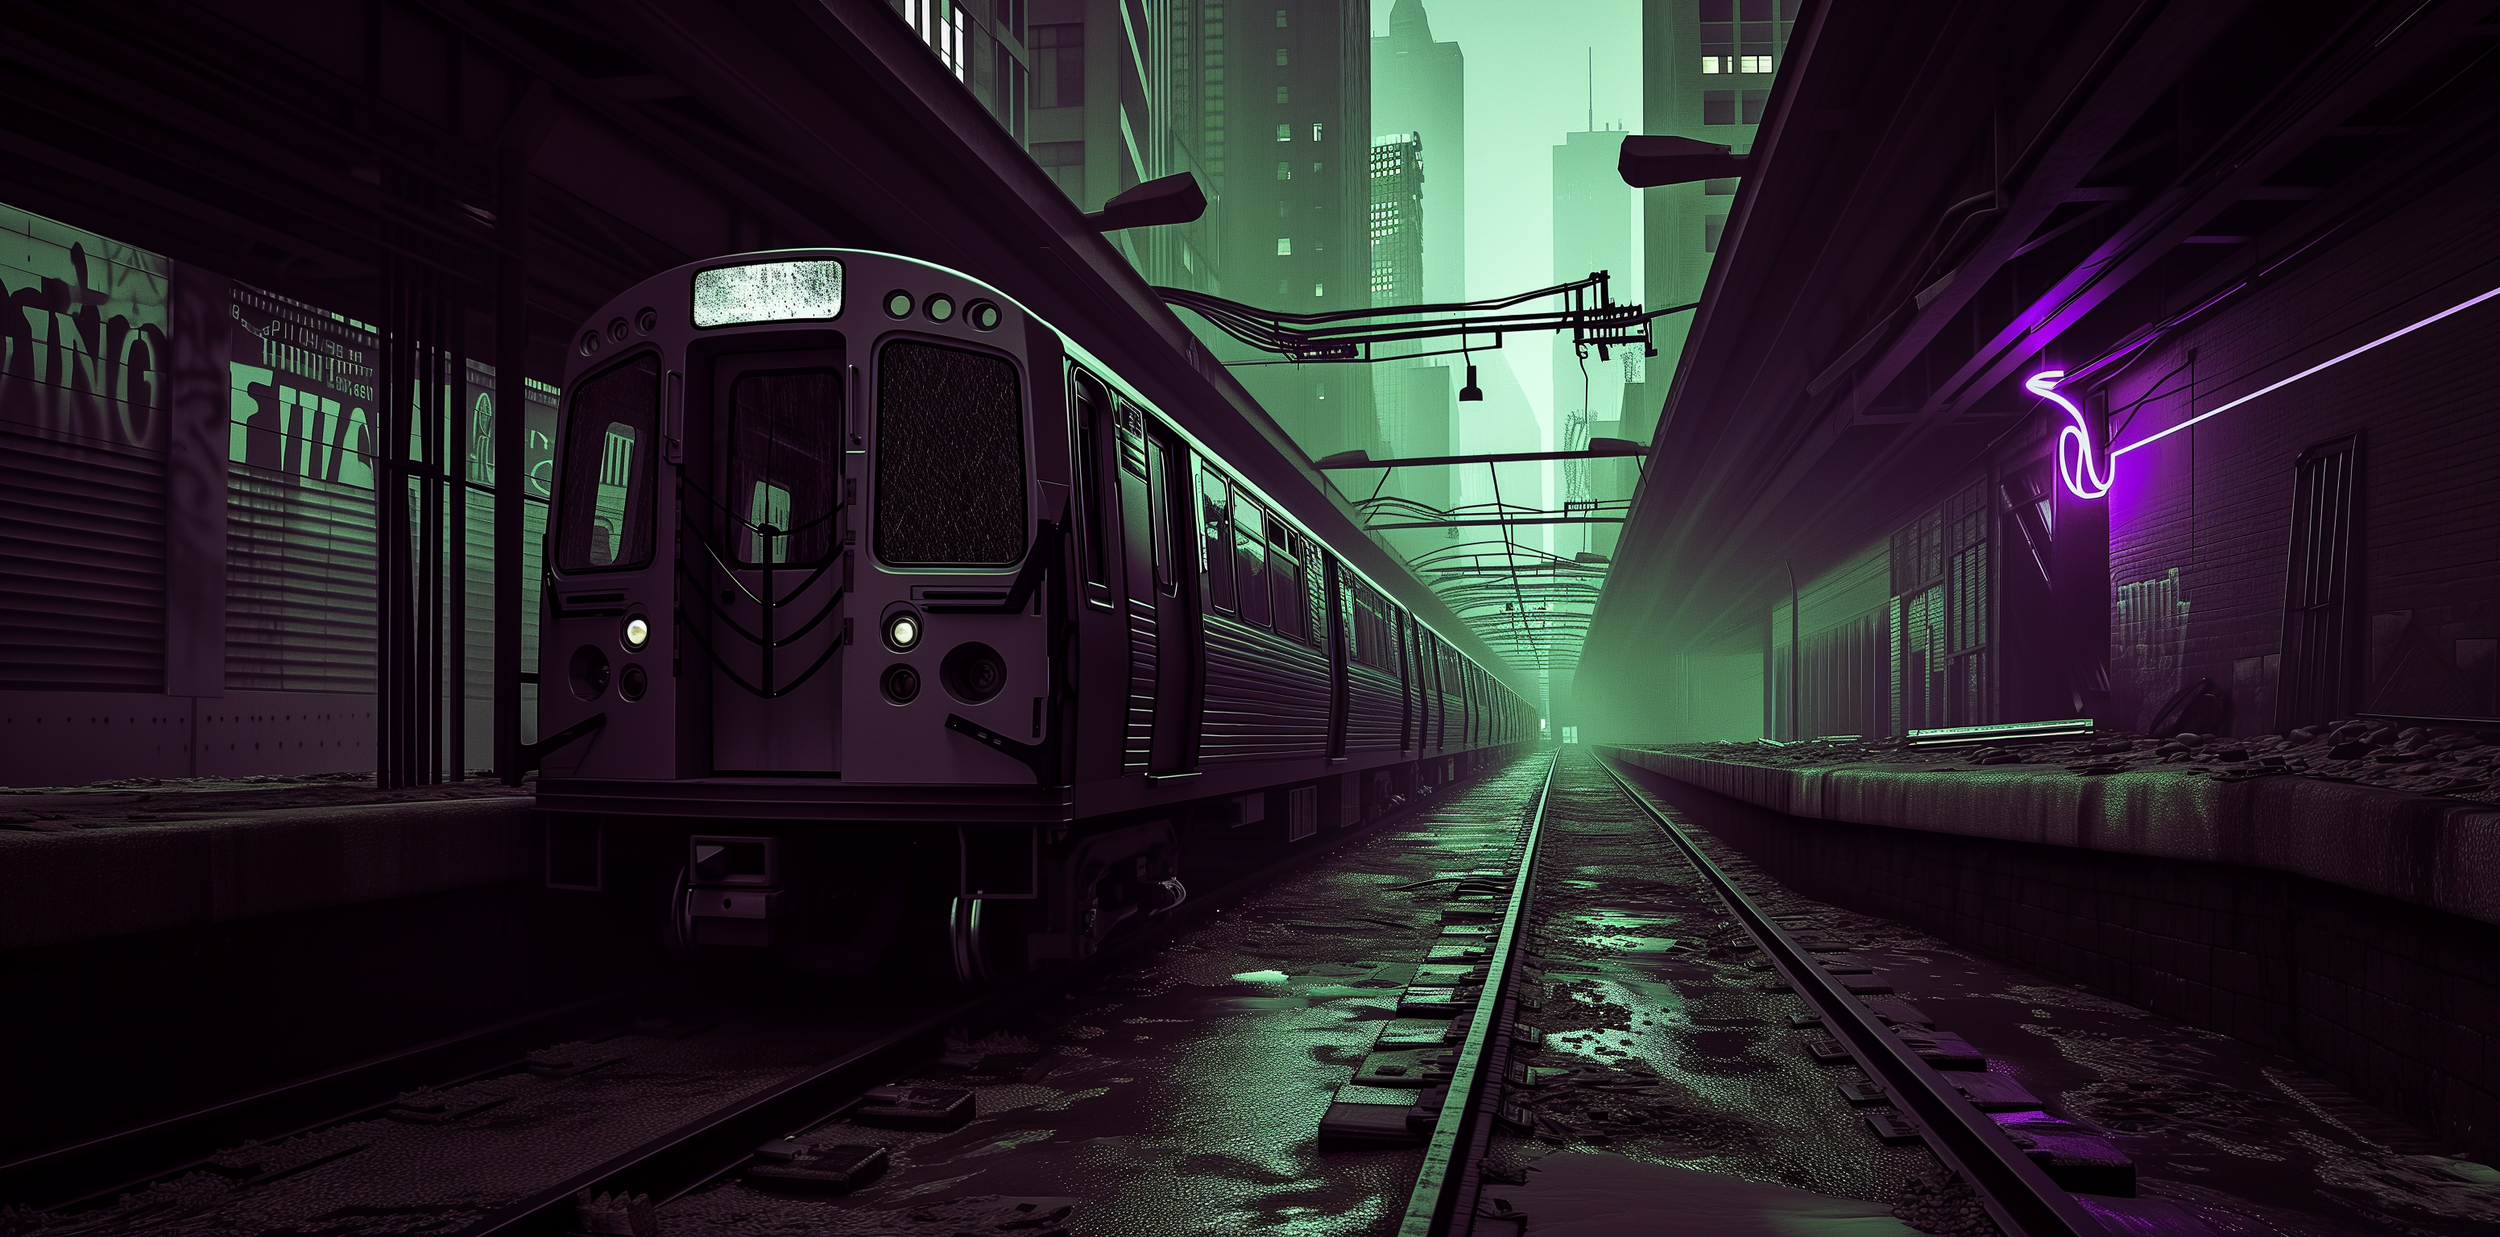 The Last Commute - A Broken Future